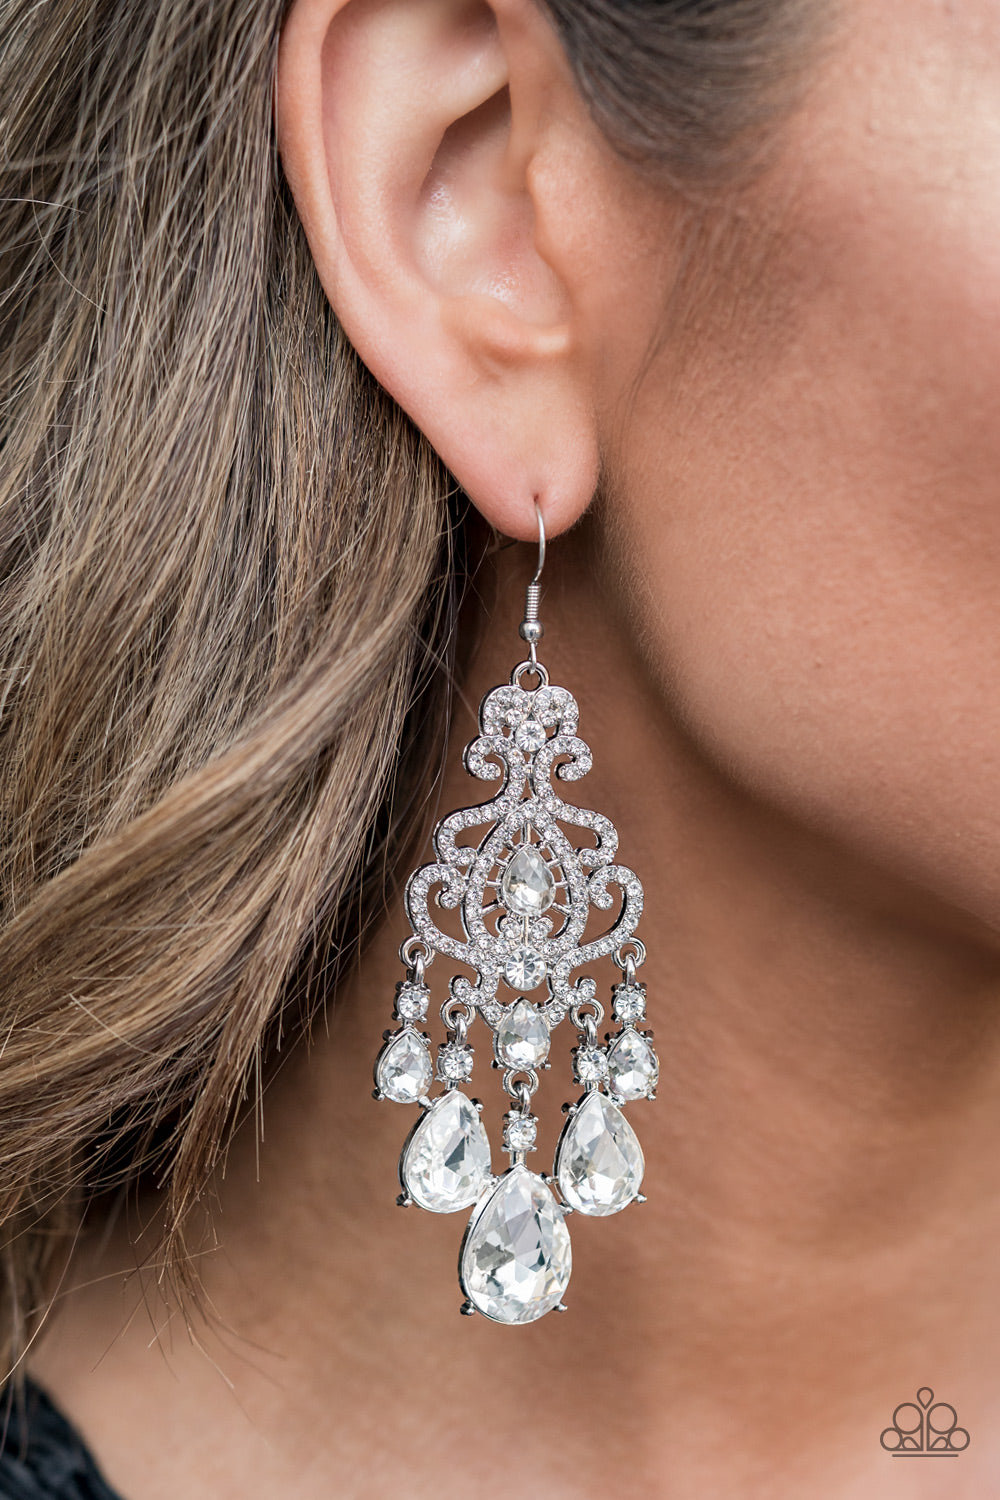 Queen Of All Things Sparkly White
Earrings - Daria's Blings N Things